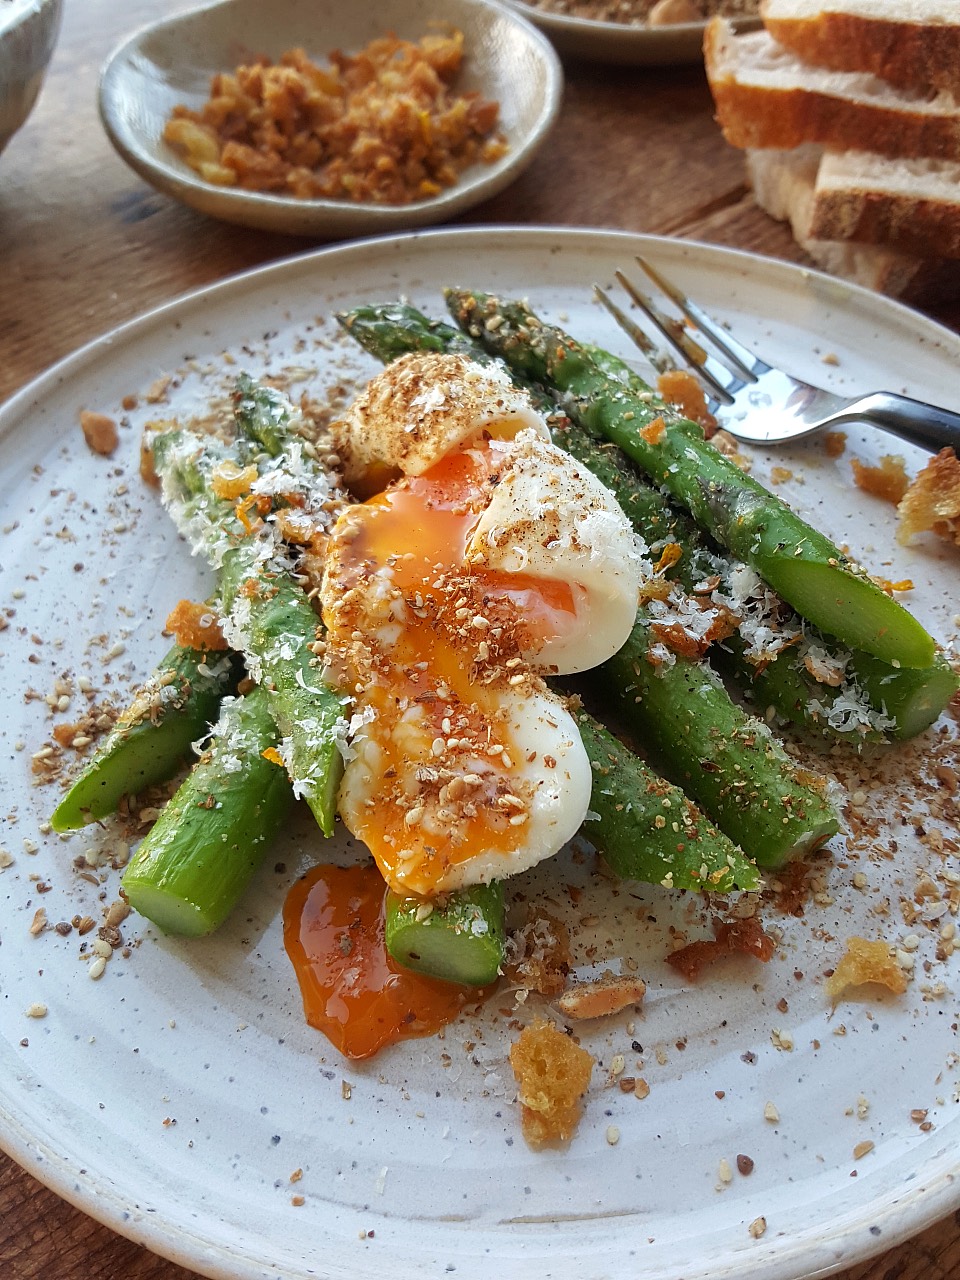 Asparagus & Crunchy Sourdough Crumbs